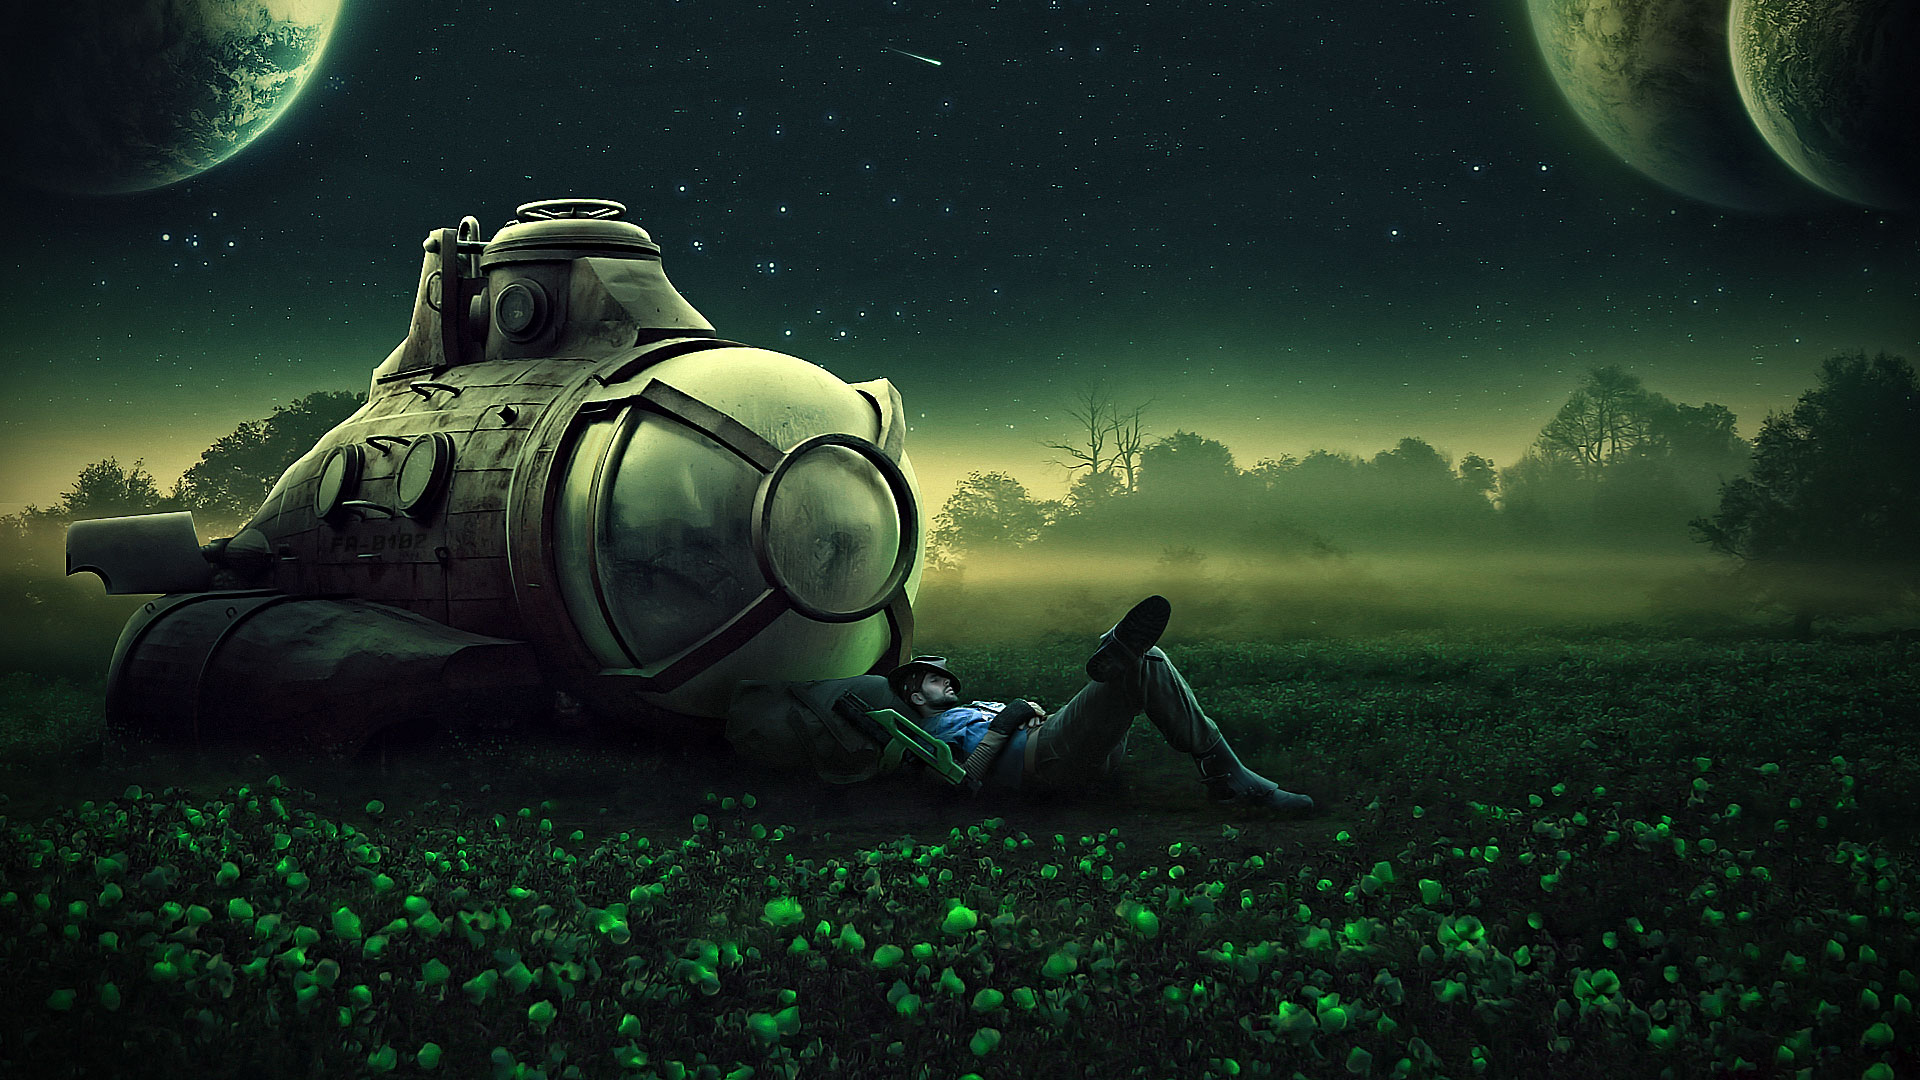 Man Sleeping On Field By Space Ship Galaxy Fantasy